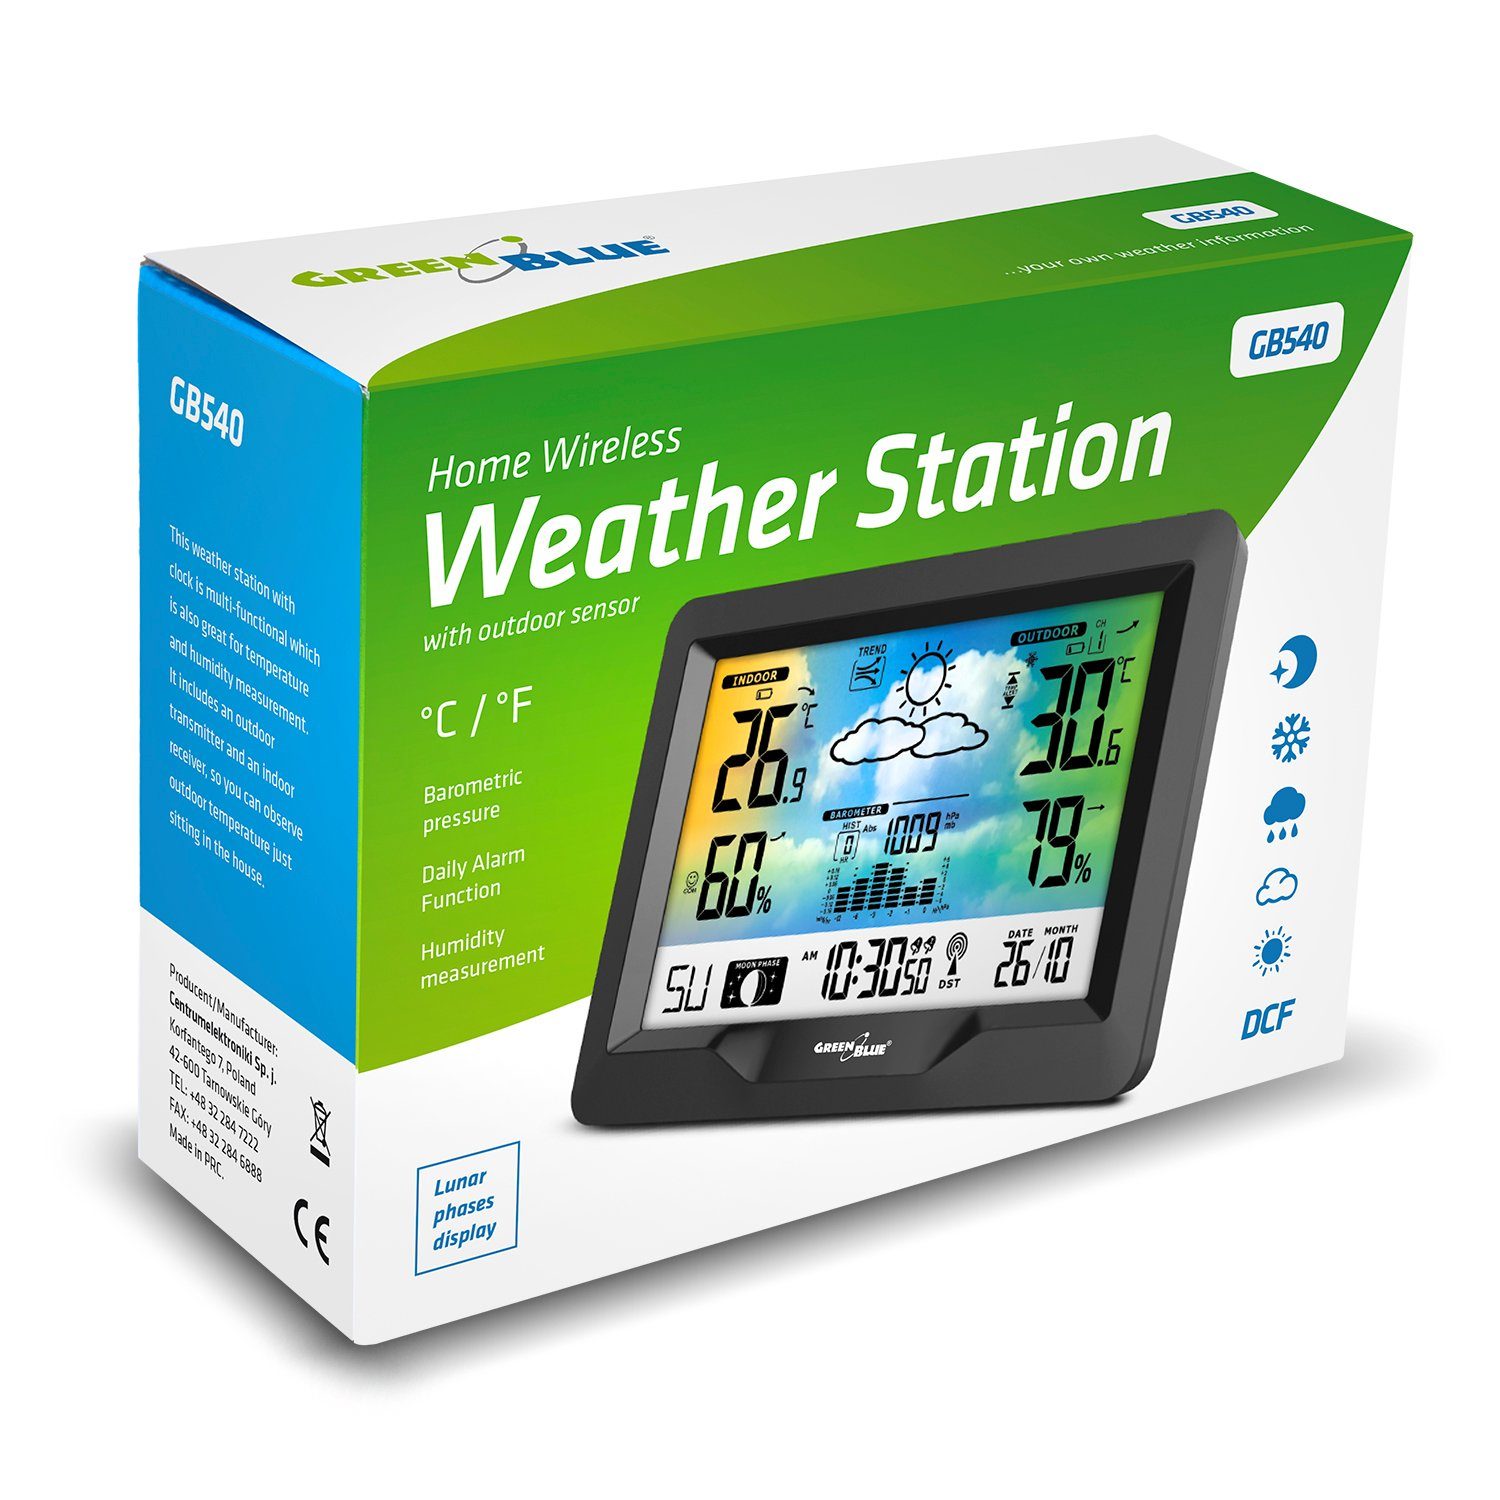 Temperatur, Farbdisplay, Wettervorhersage) Funkwetterstation (mit GreenBlue GB540 Luftfeuchtigkeit, Außensensor, Luftdruck,